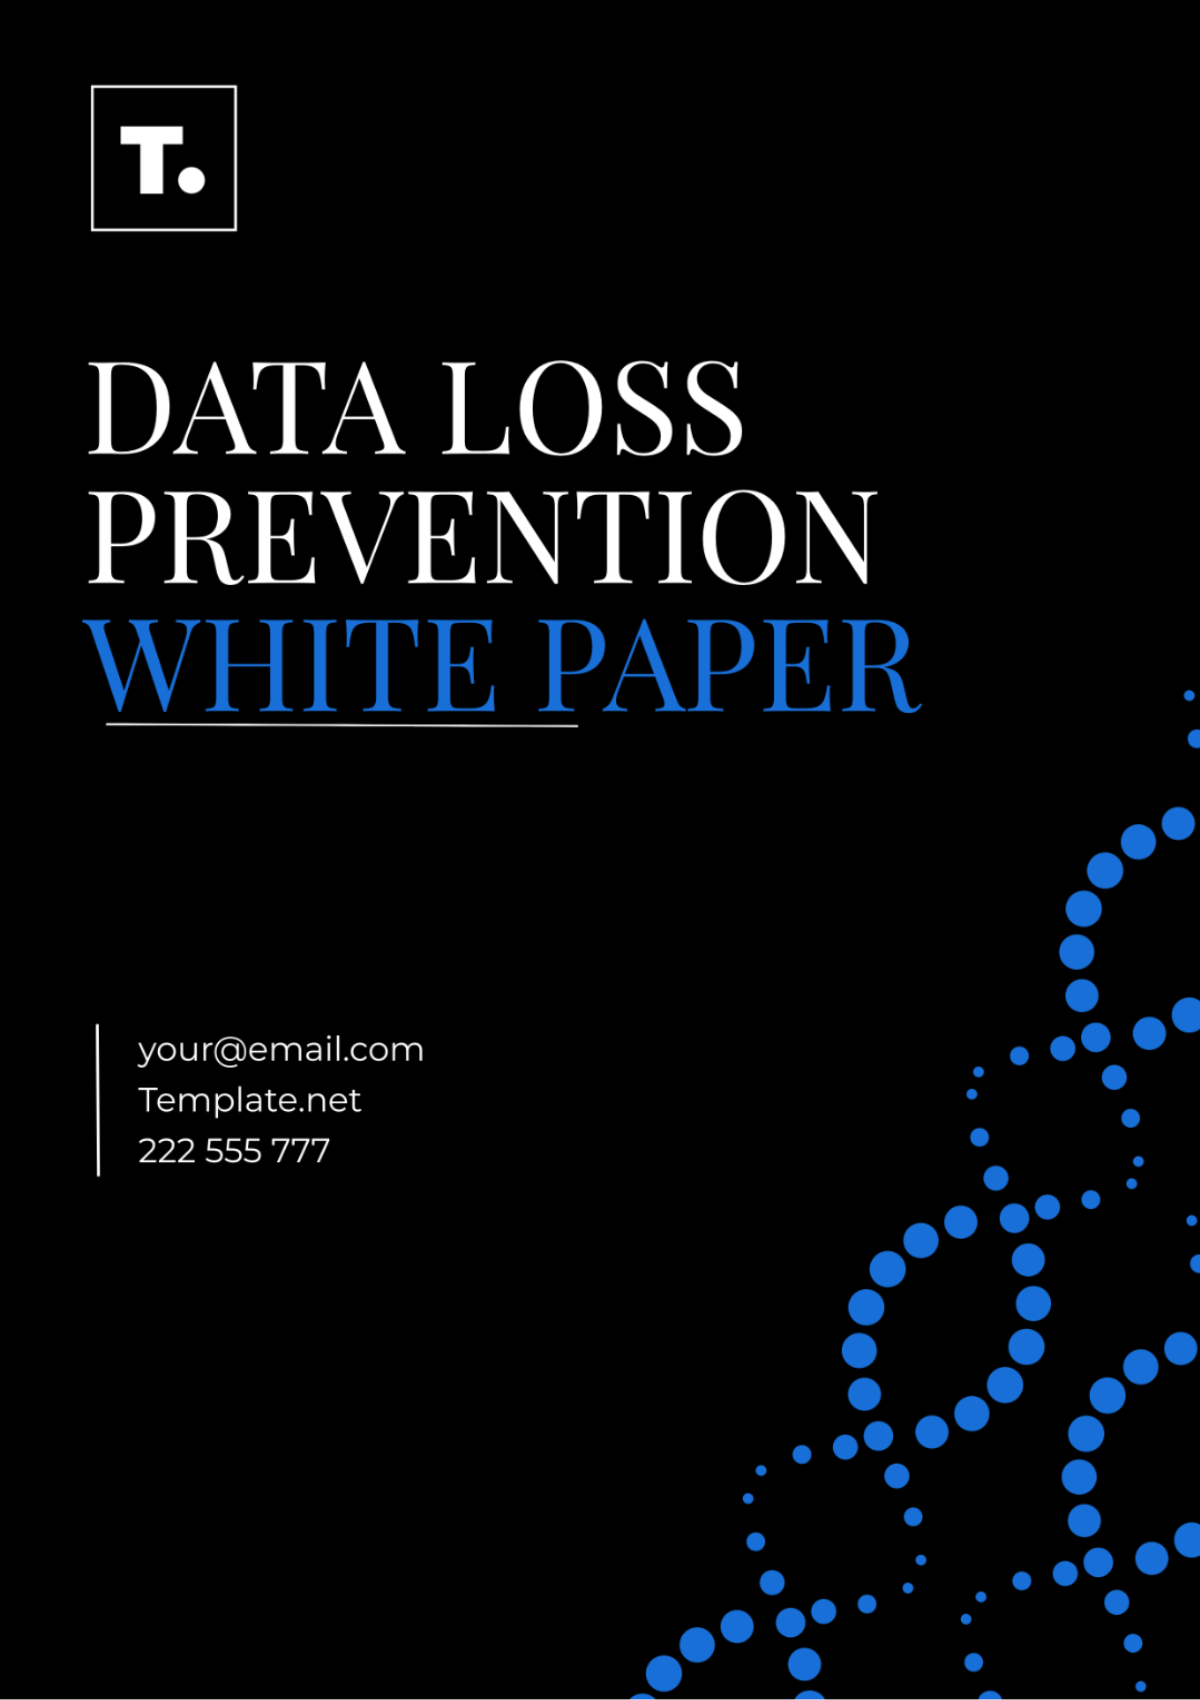 Data Loss Prevention White Paper Template